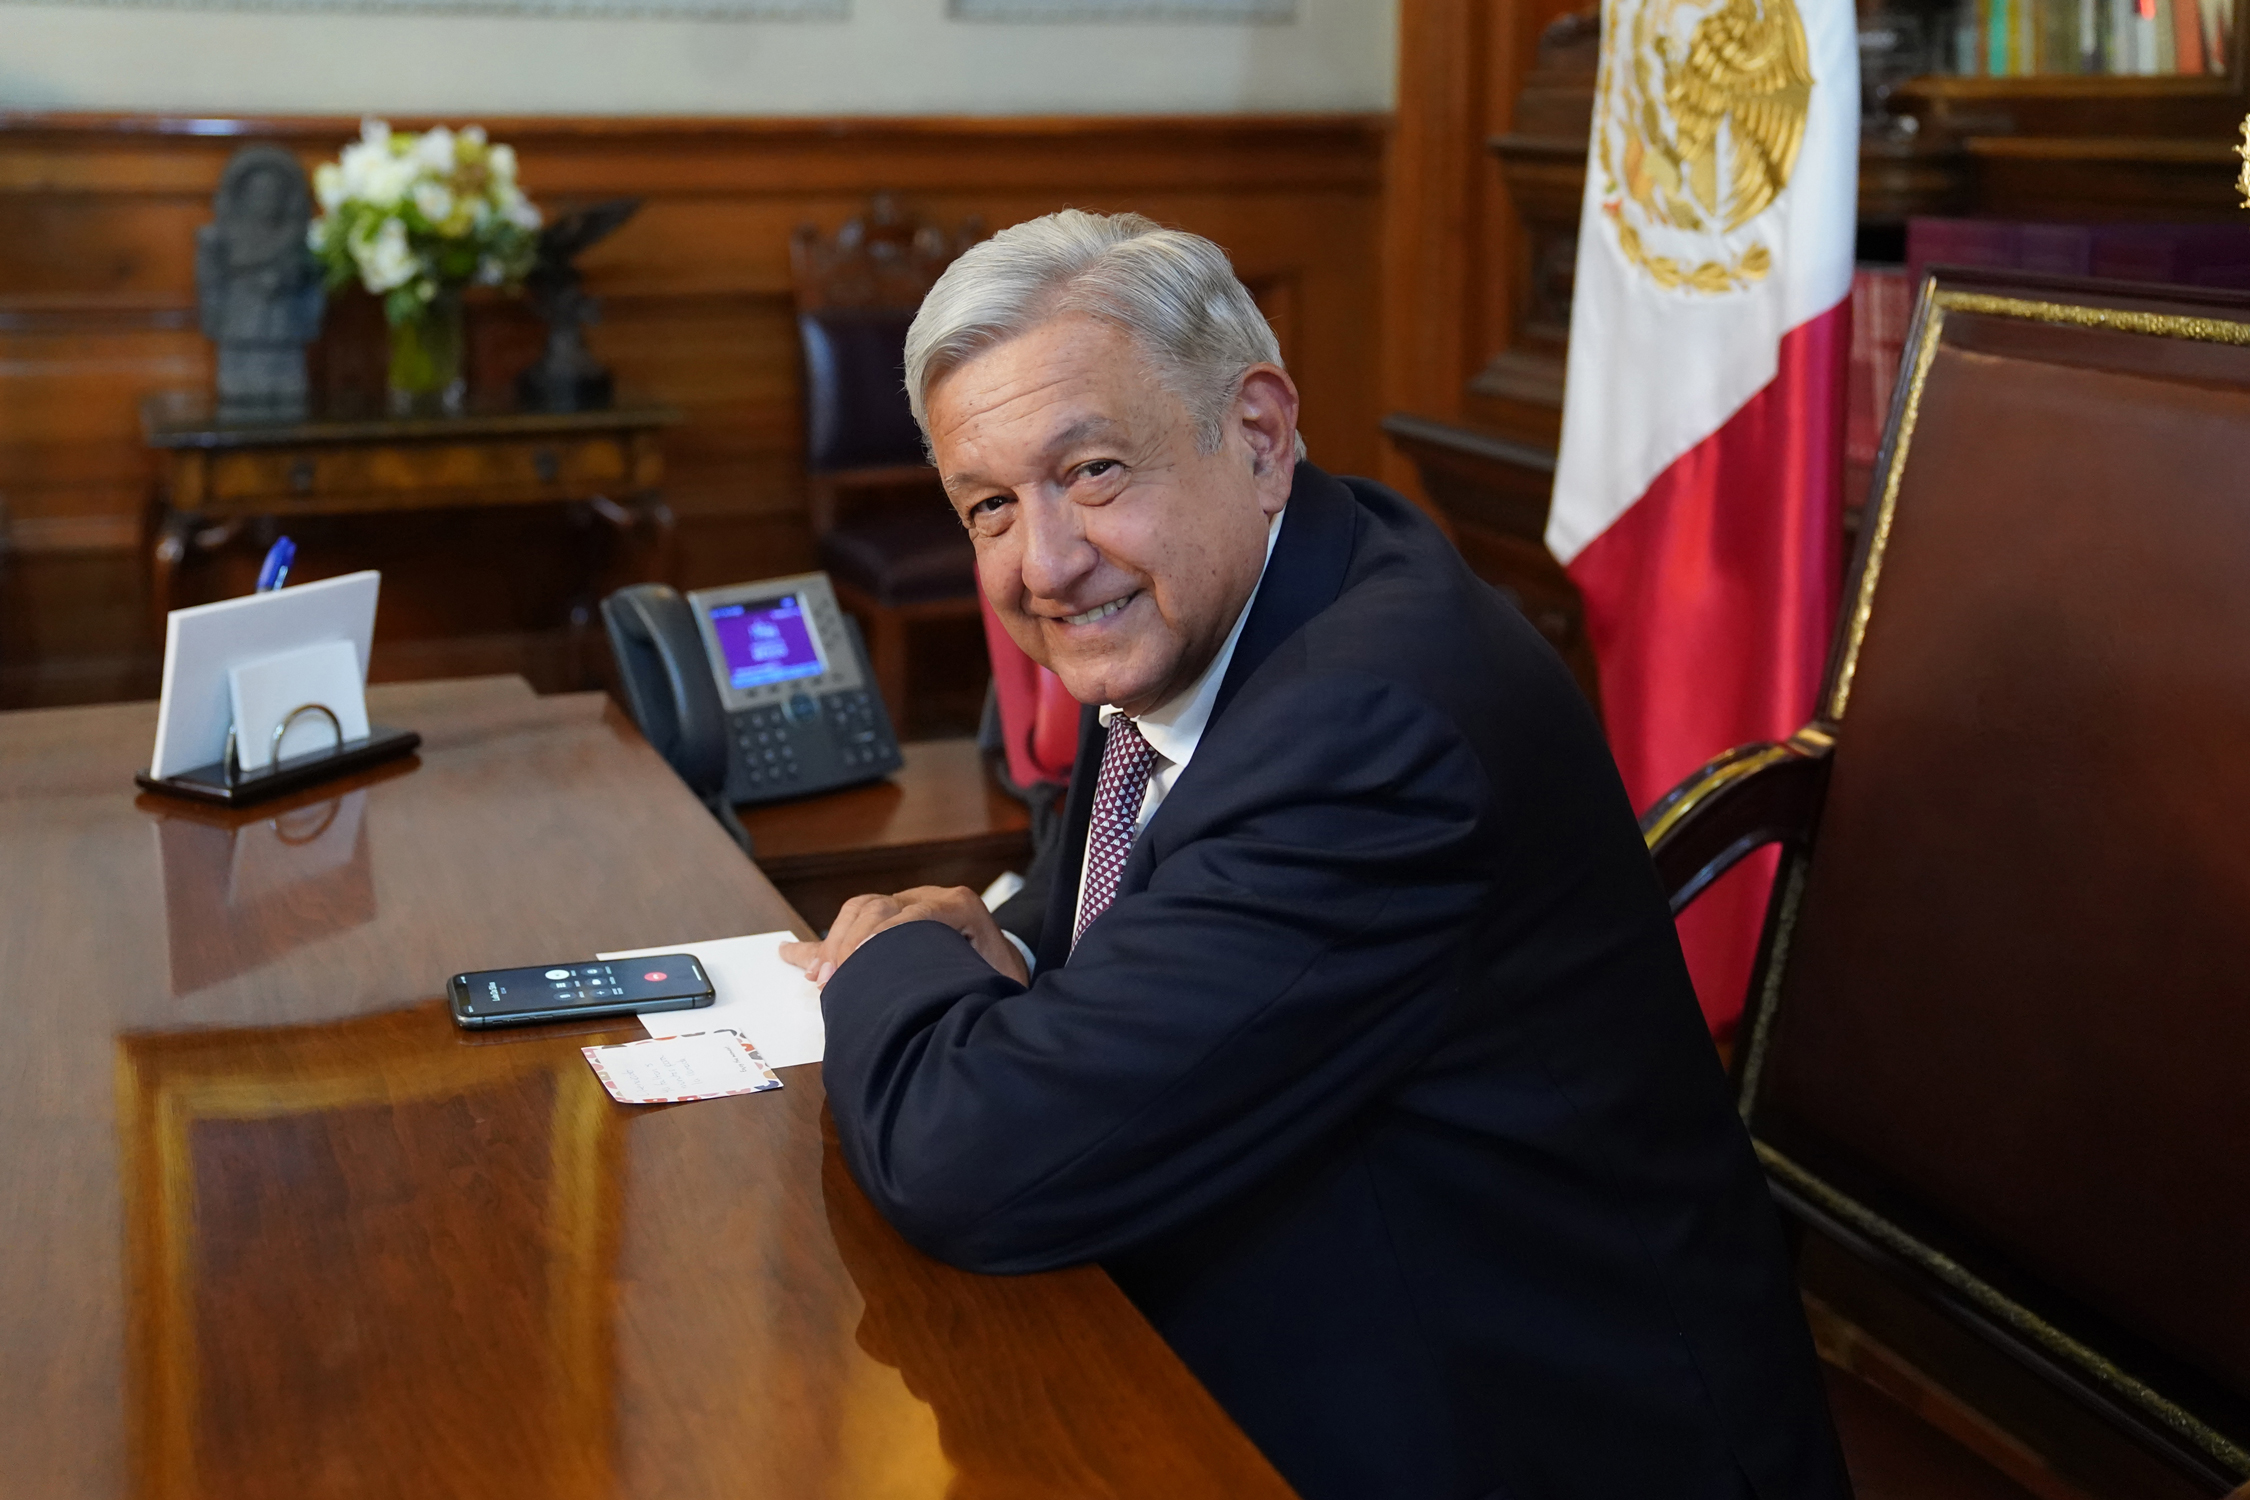 López Obrador apoyó a Pedro Castillo tras ataque derechista